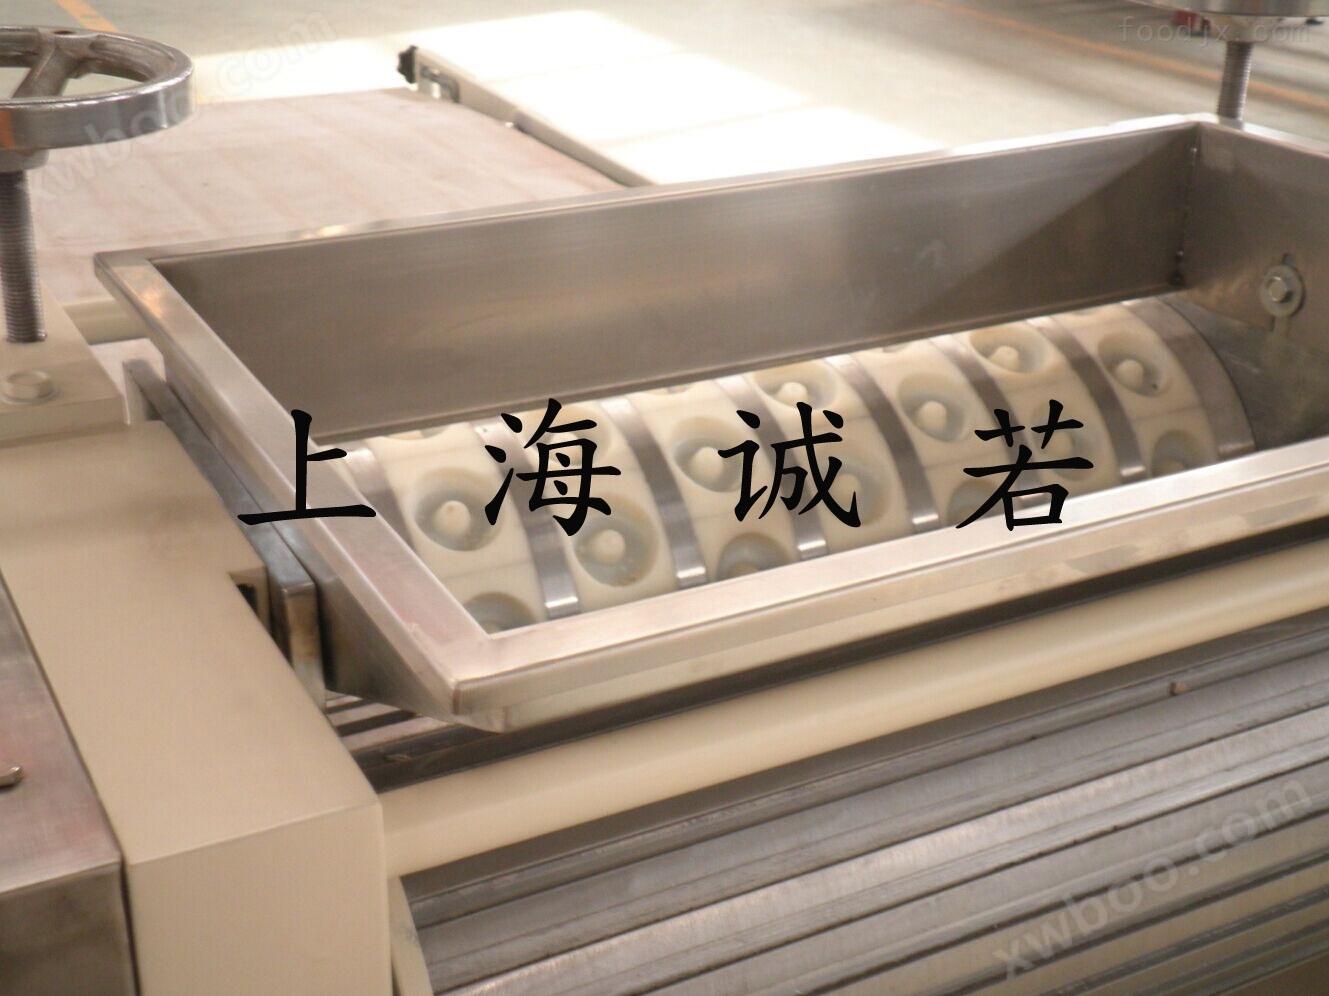 上海诚若机械有限公司专业生产桃酥饼干机